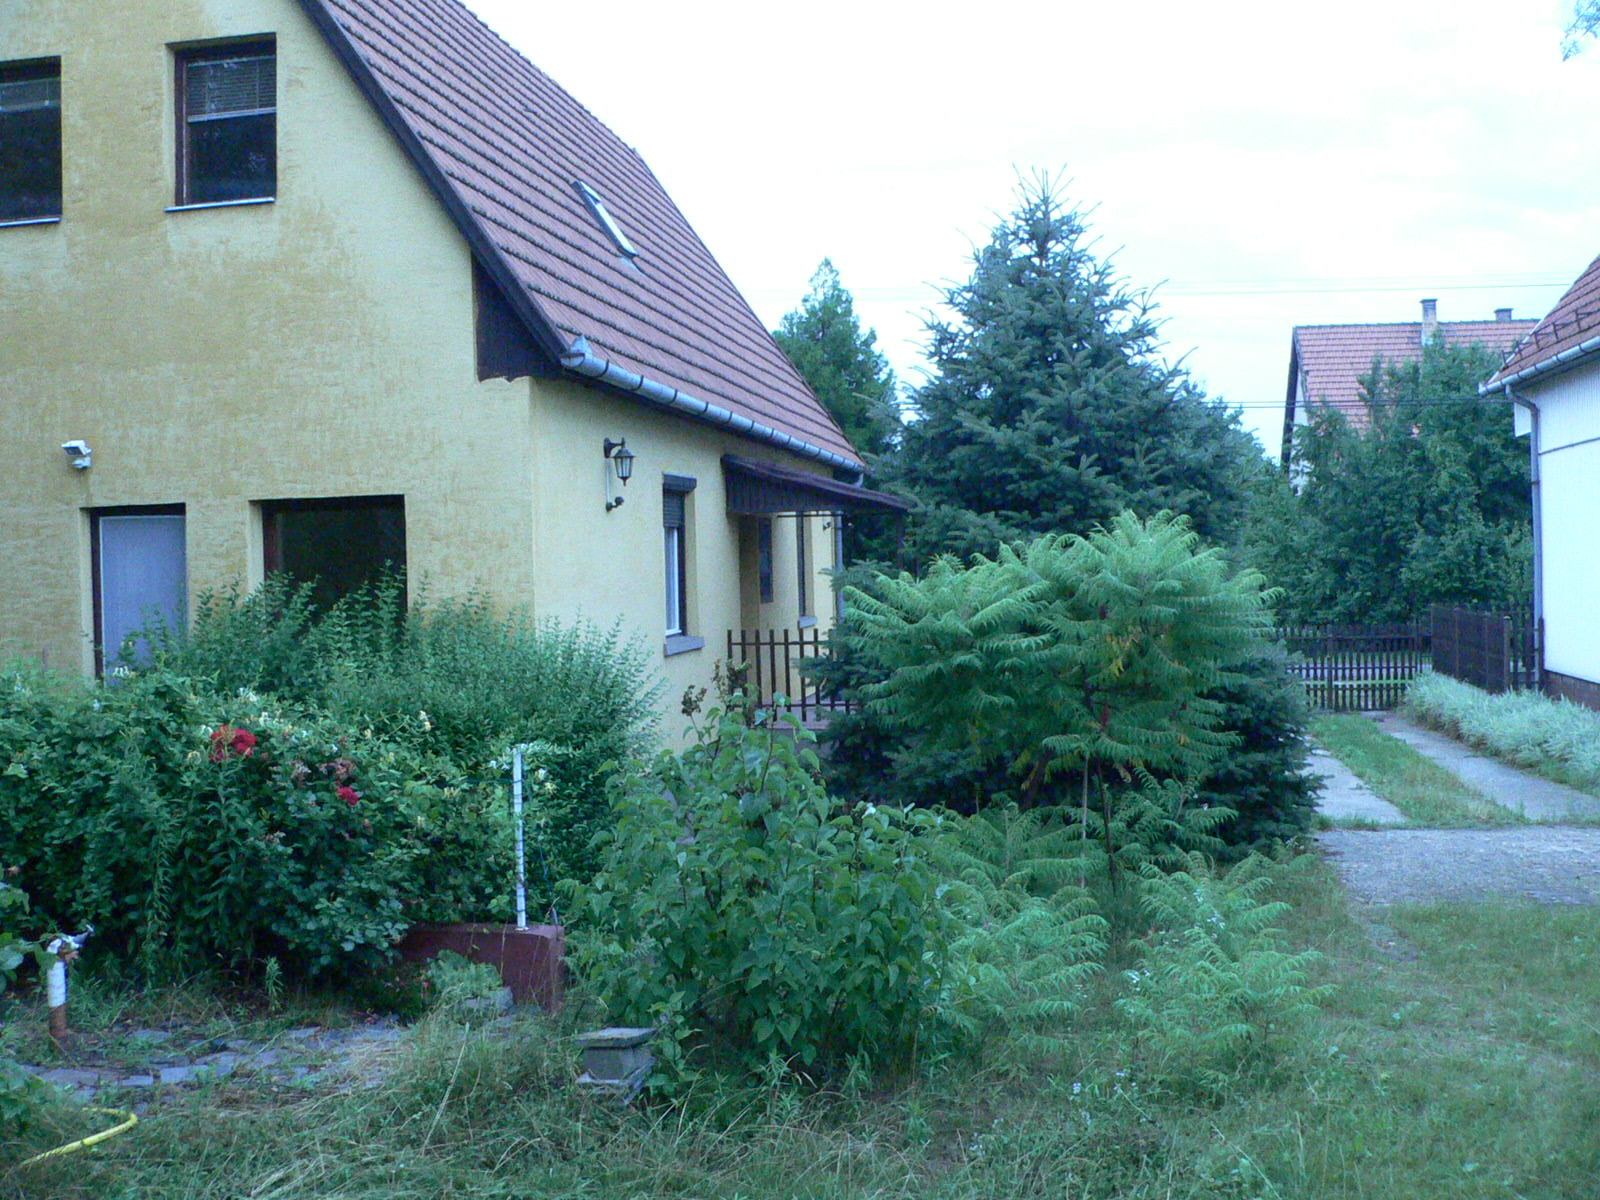 Ház és elvadult környéke 2005 július 13